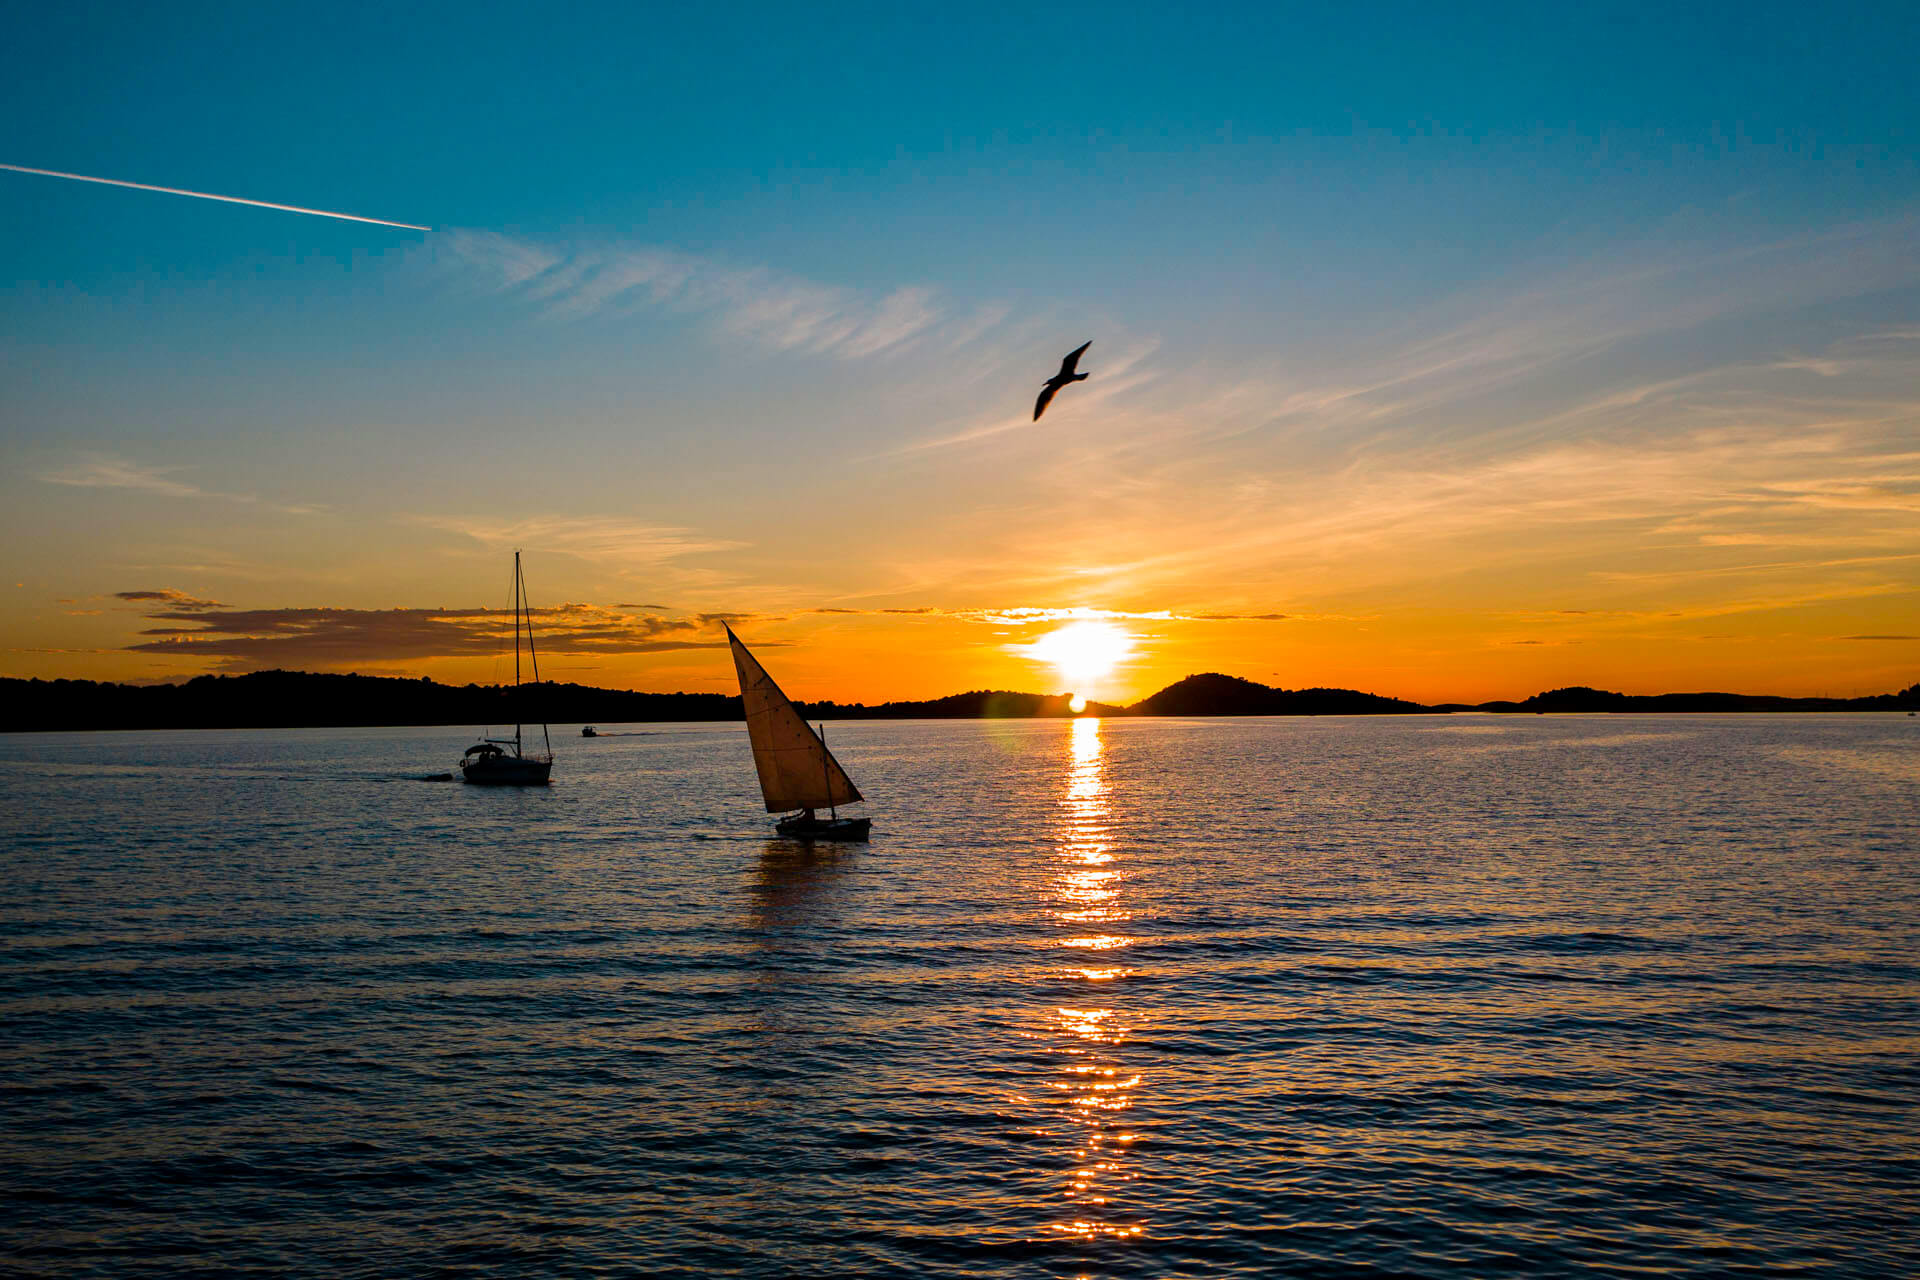 2019/09/24 - Sailing boat at sunset 1